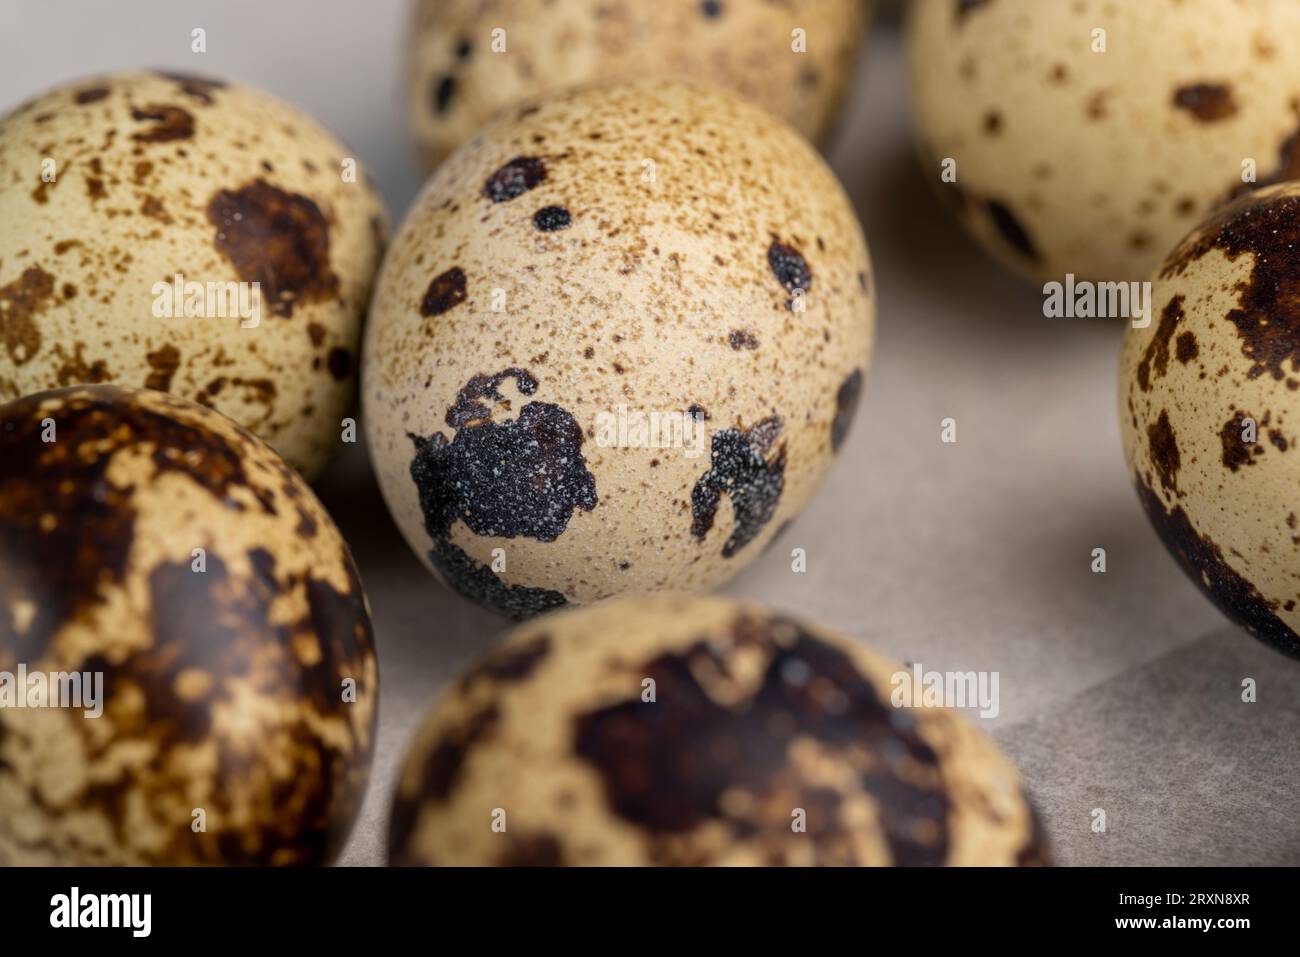 petits œufs de caille bouillis sur la table, œufs de caille cuits dans l'eau bouillante sur la table Banque D'Images